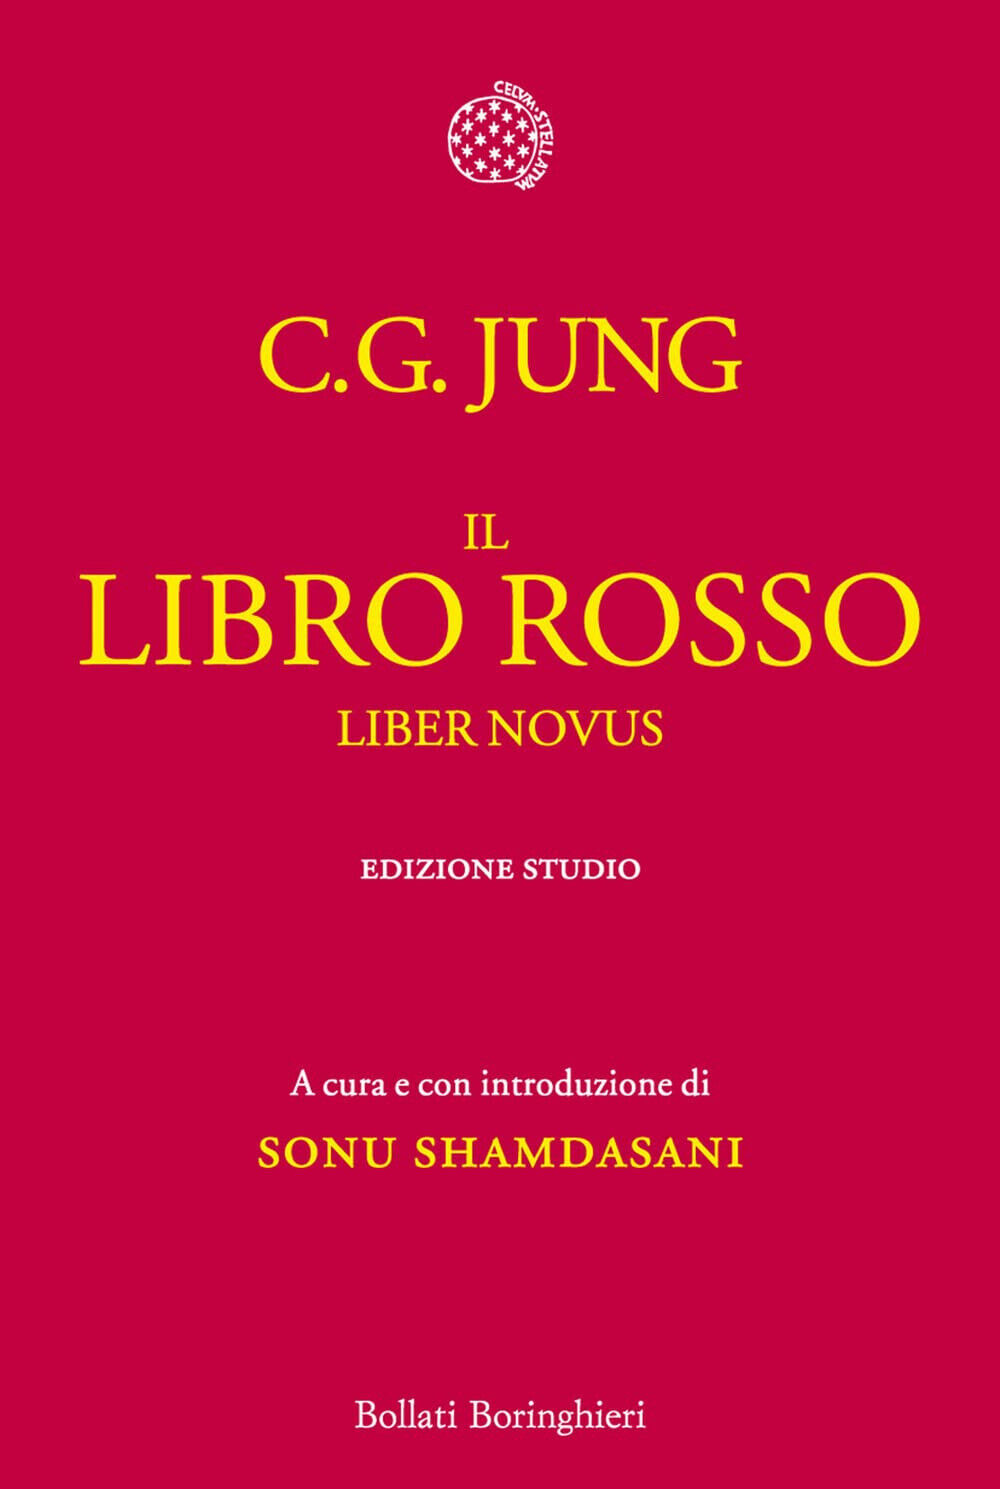 Il libro rosso. Liber novus - Carl Gustav Jung - Bollati Boringhieri, 2012